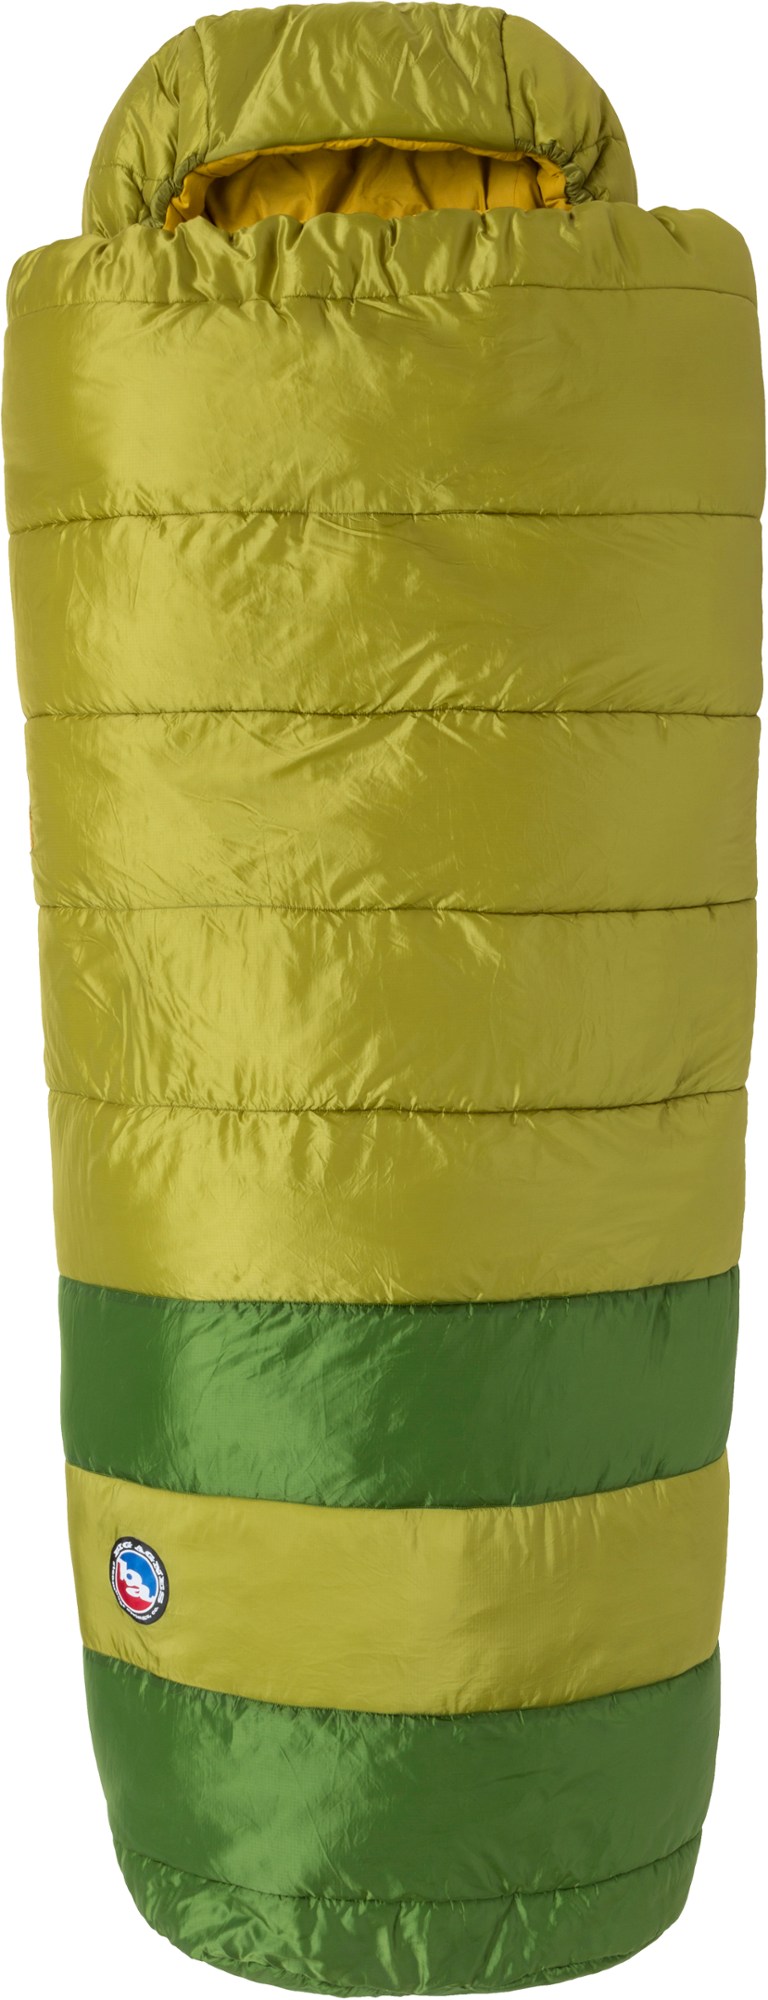 спальный мешок sidewinder sl 35 женский big agnes синий Спальный мешок Echo Park 0 Big Agnes, зеленый